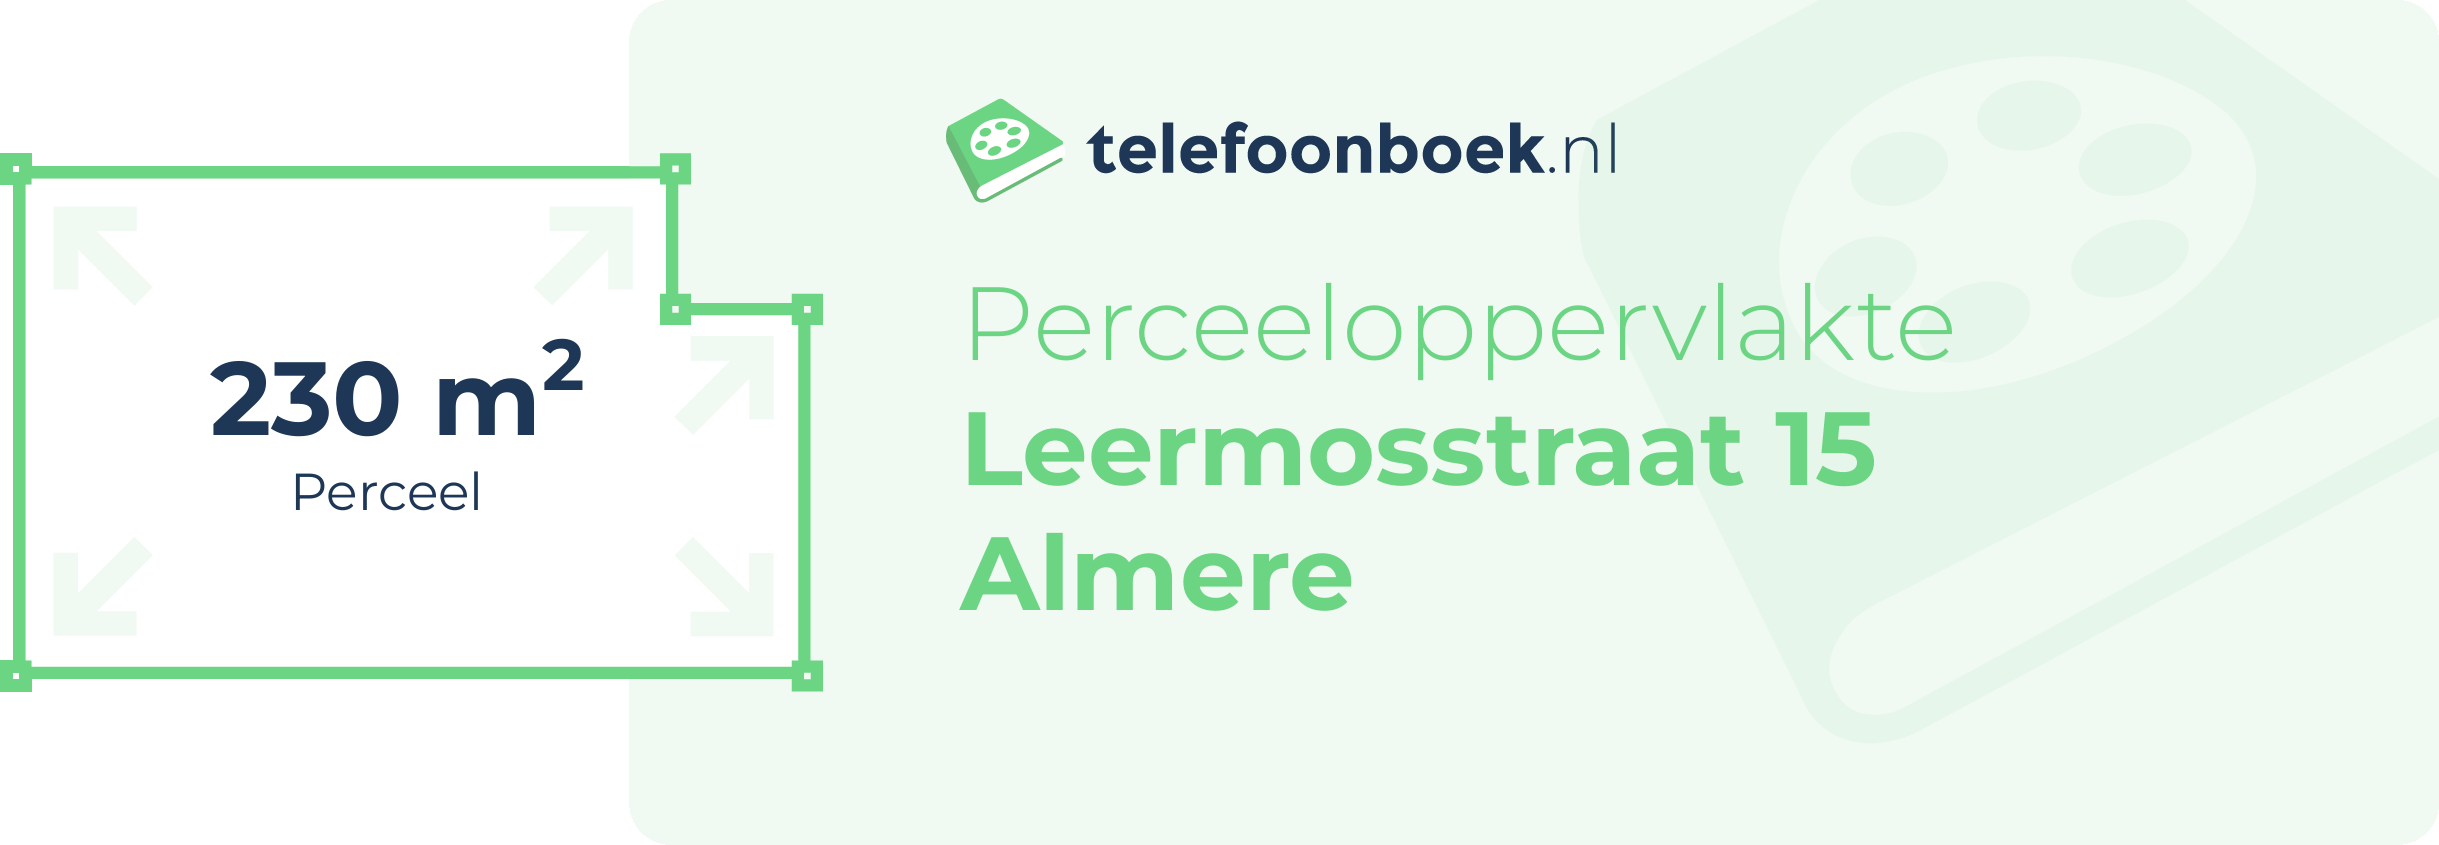 Perceeloppervlakte Leermosstraat 15 Almere